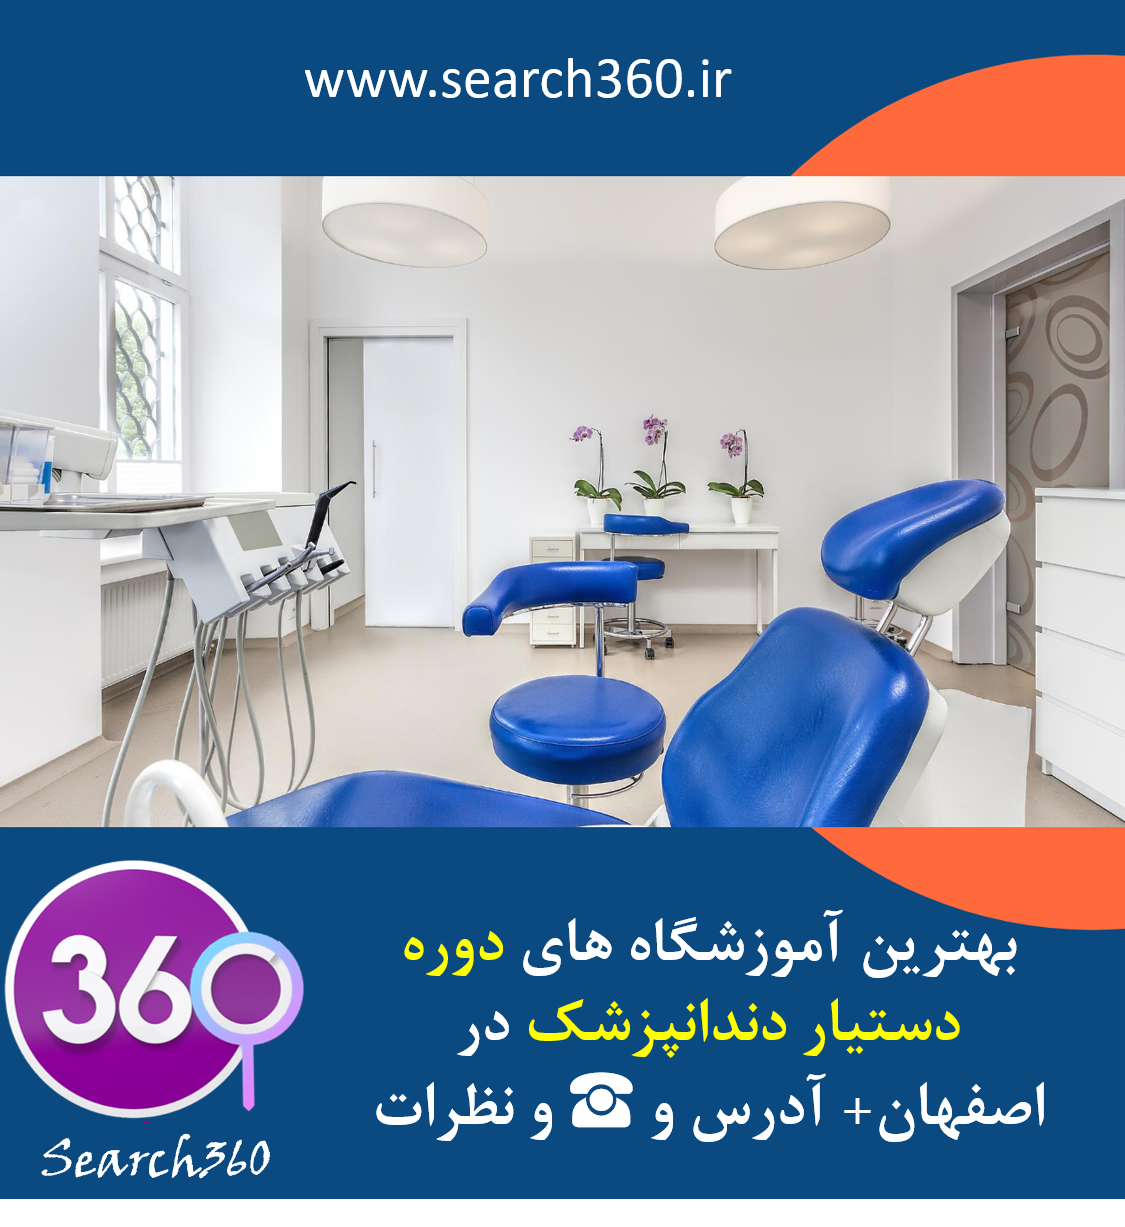 بهترین آموزشگاه دوره دستیار دندانپزشک در اصفهان با آدرس، تلفن ☎️ و نظرات